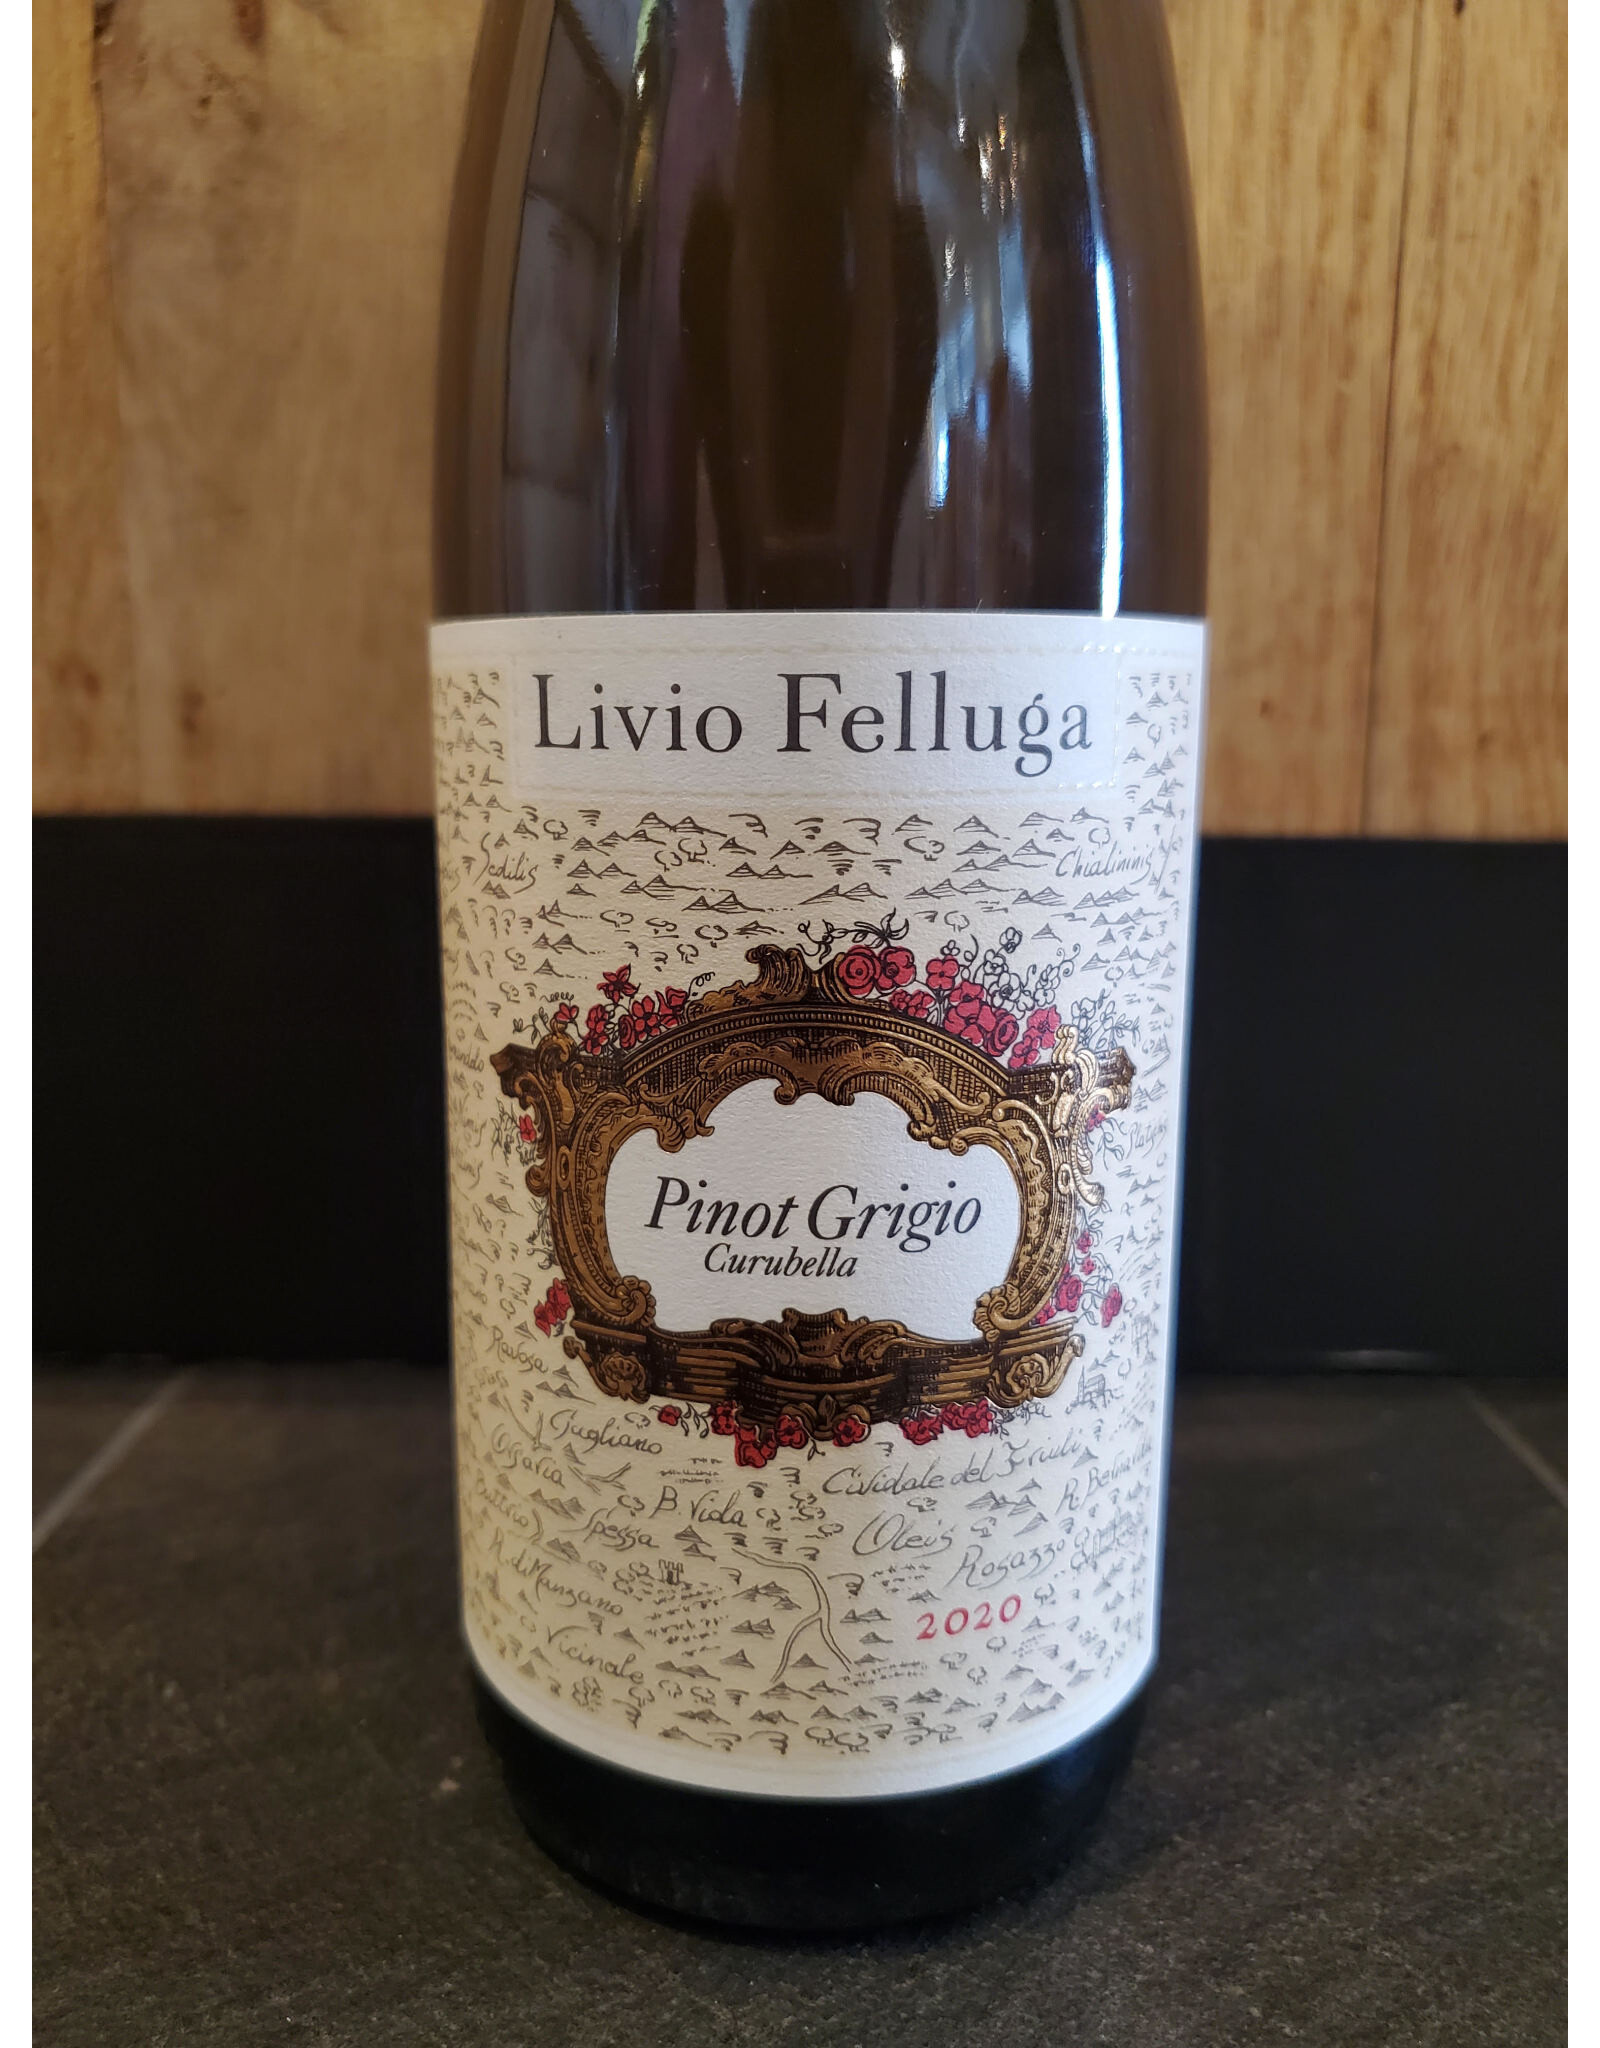 Livio Felluga, Curubella, Pinot Grigio, 2020